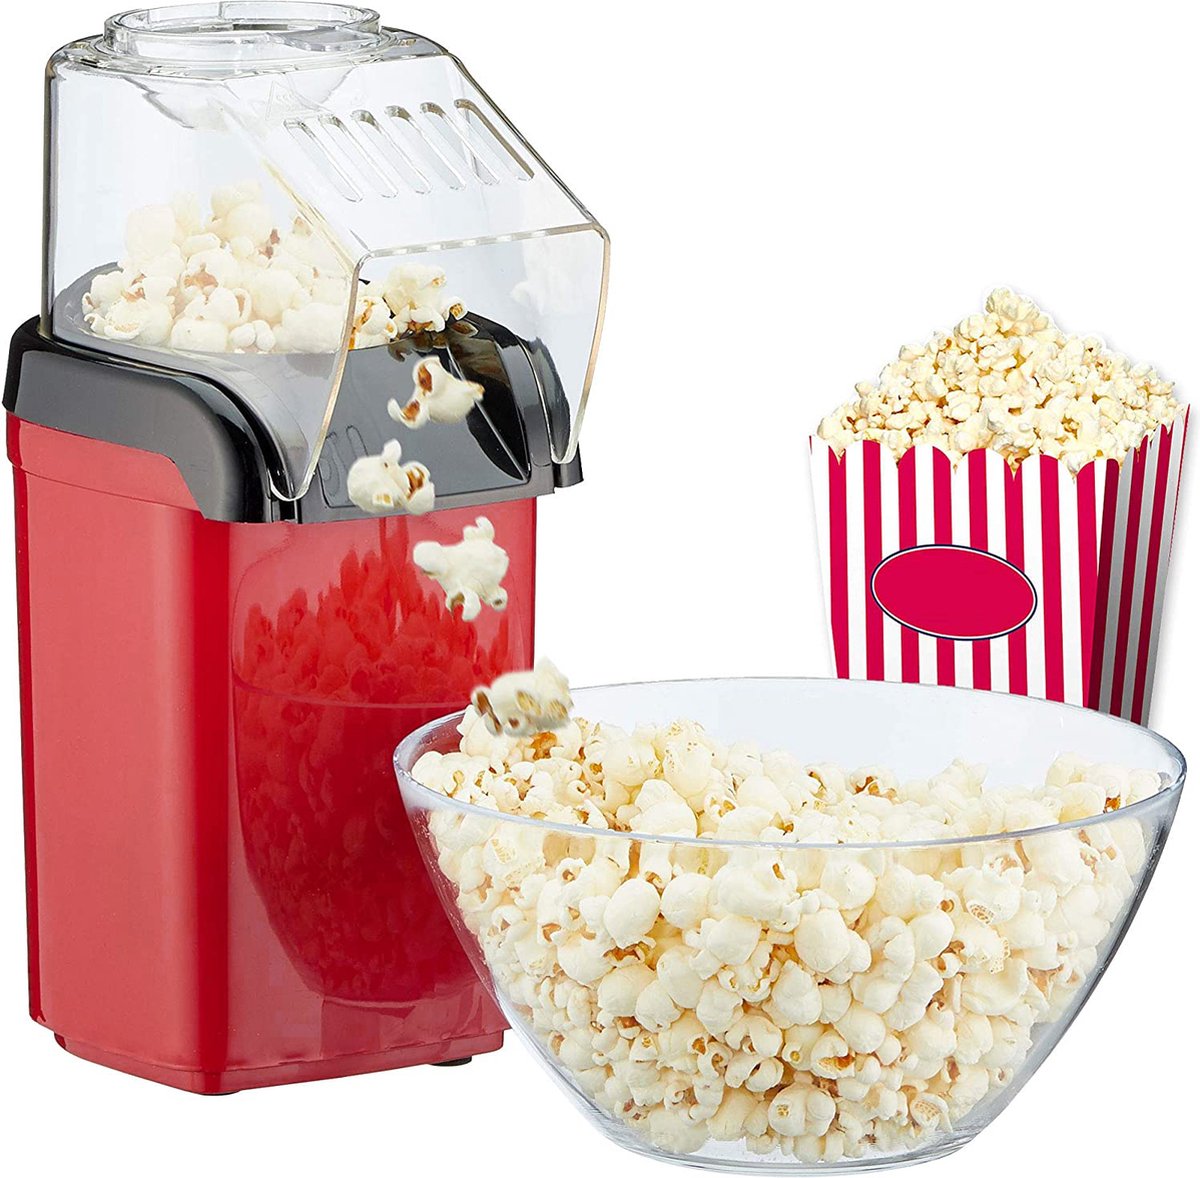 PopIt Popcorn Machine - popcornmachine - popcornpan - popcornmaker - popcorn - popcorn mais